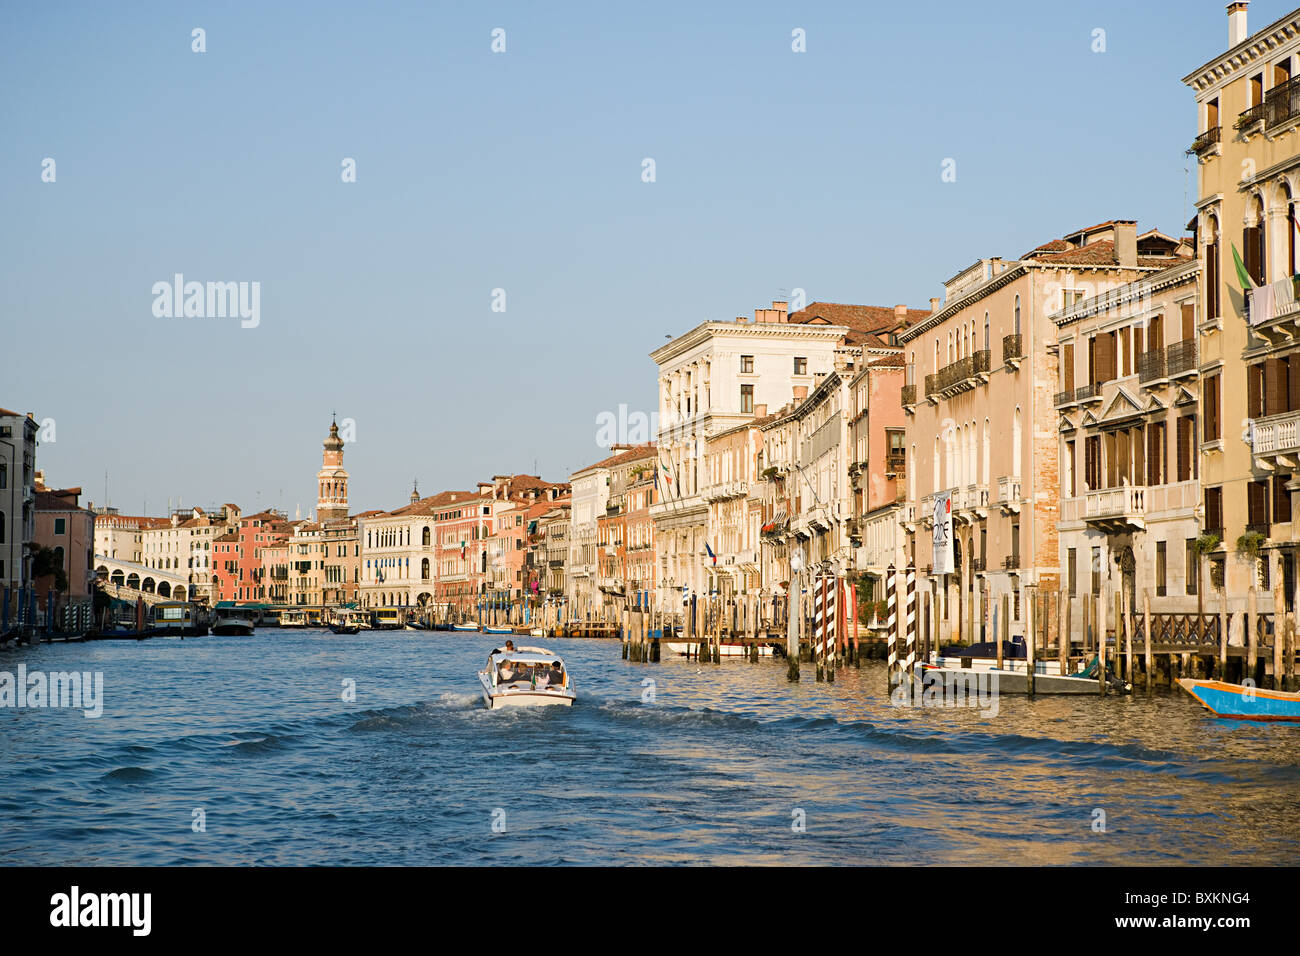 Grand canal, Venice, Italy Stock Photo